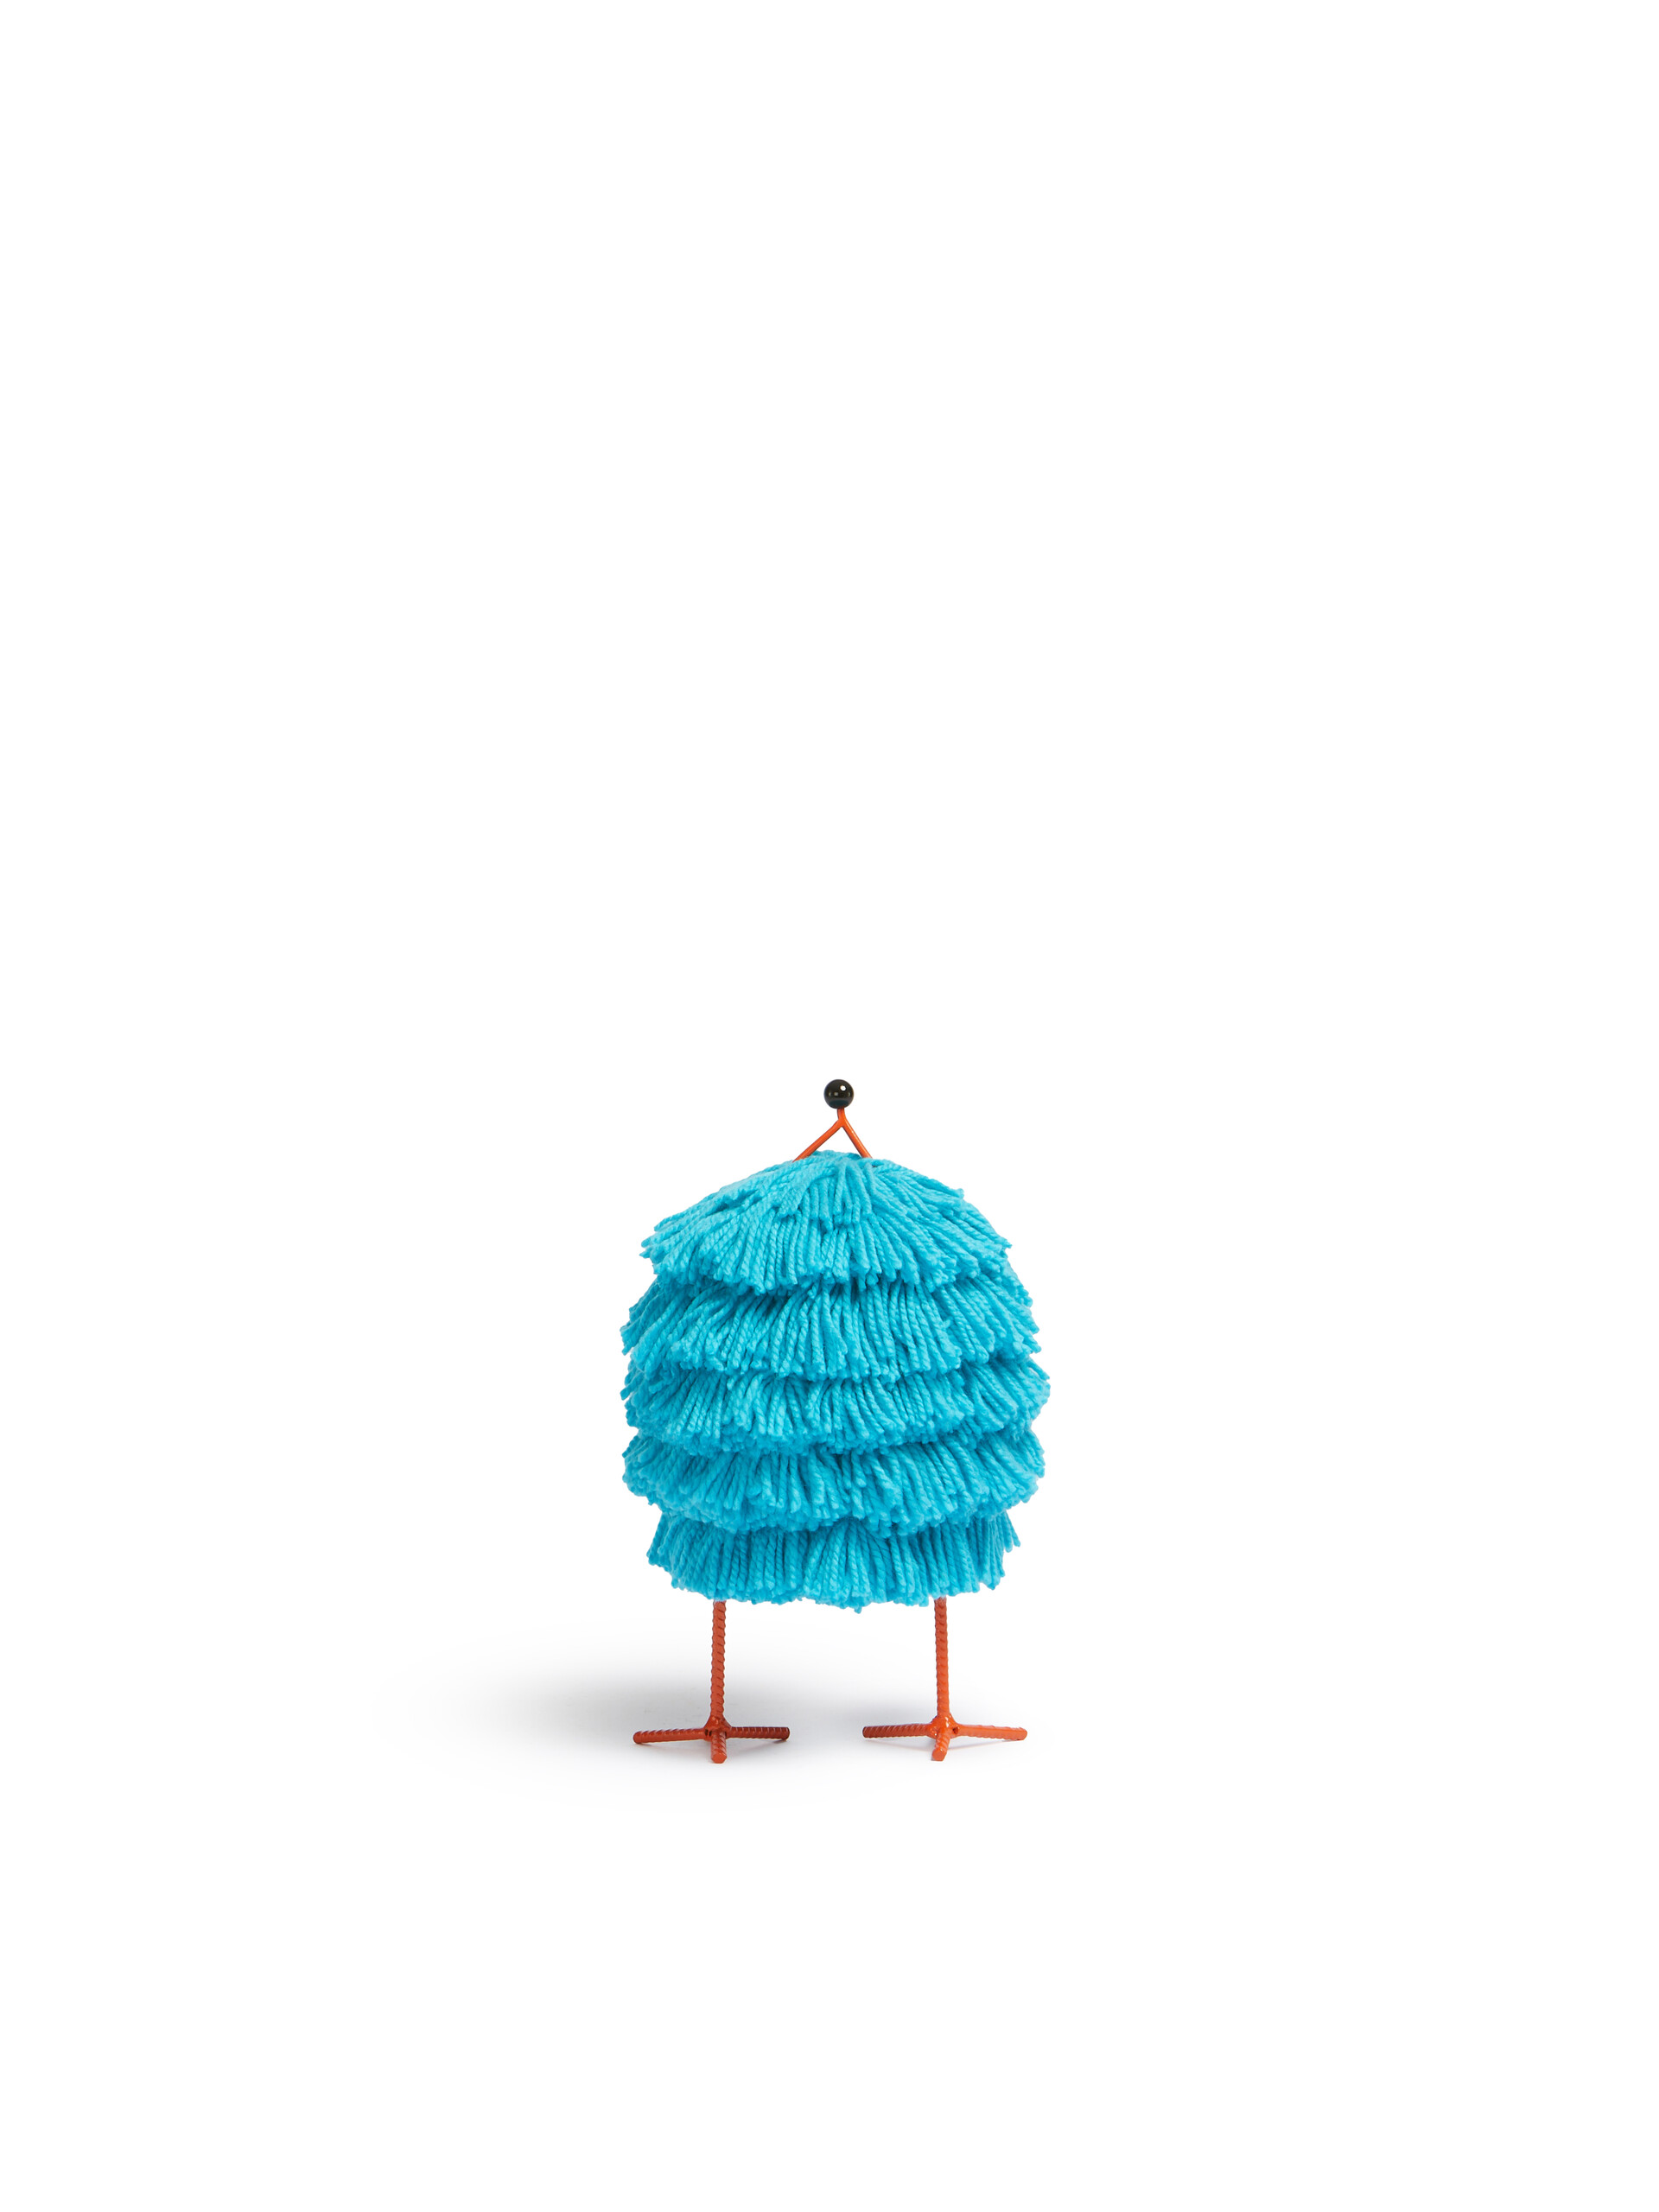 Petit Woolly Friend Abelo bleu clair - Accessoires - Image 3